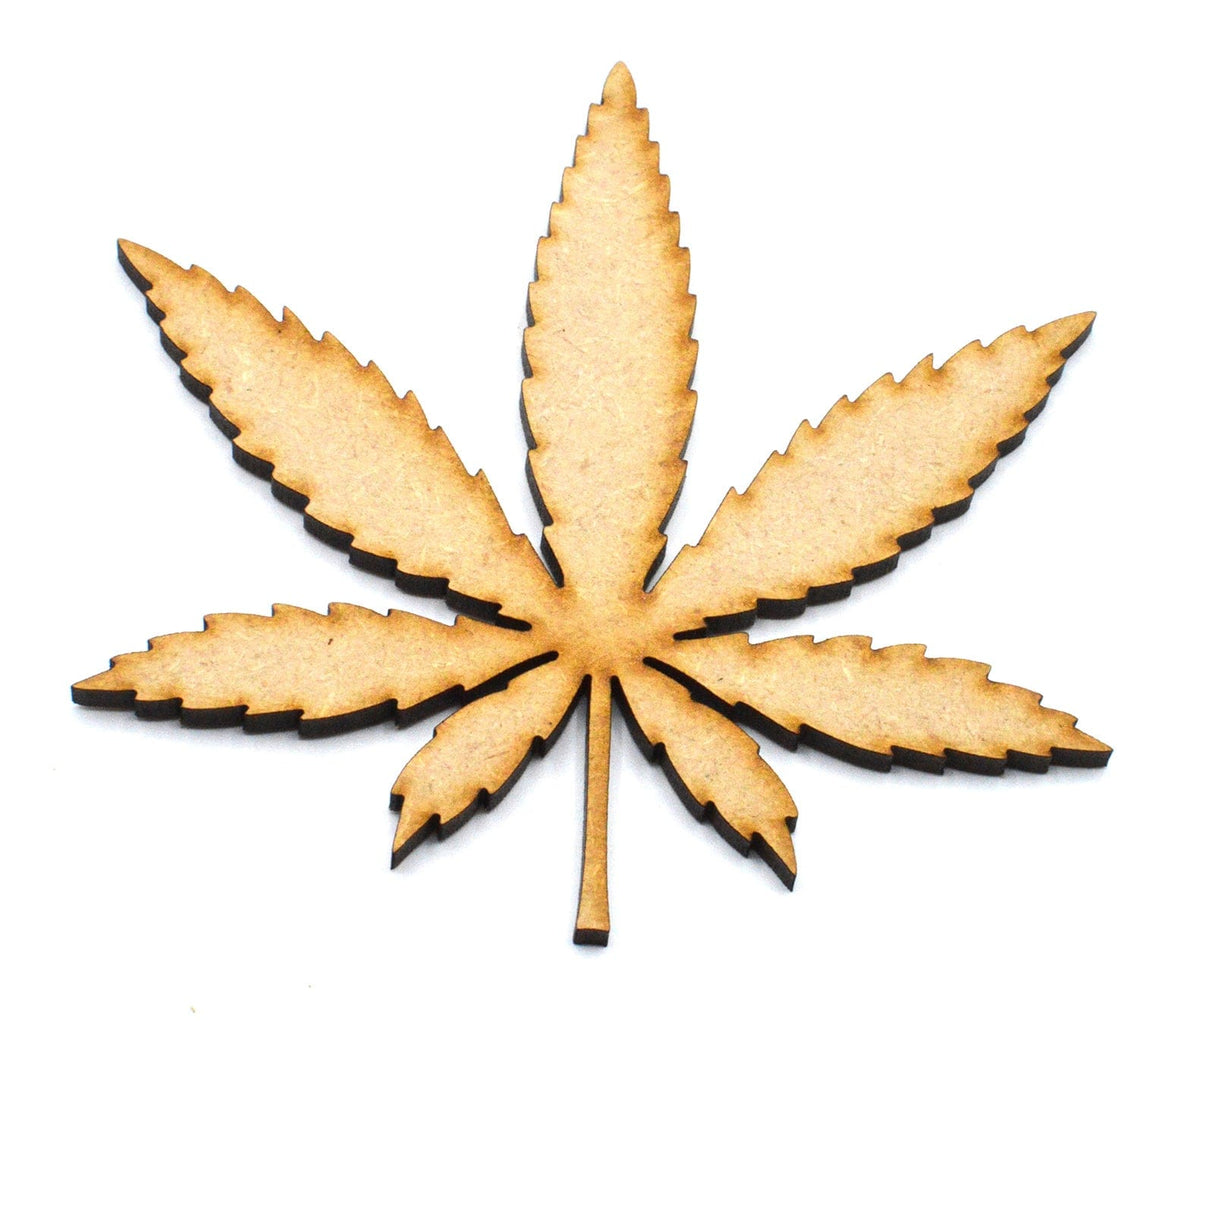 Cannabis Leaf Shape - Hemp Leaf - Marijuana - Weed - Laserworksuk